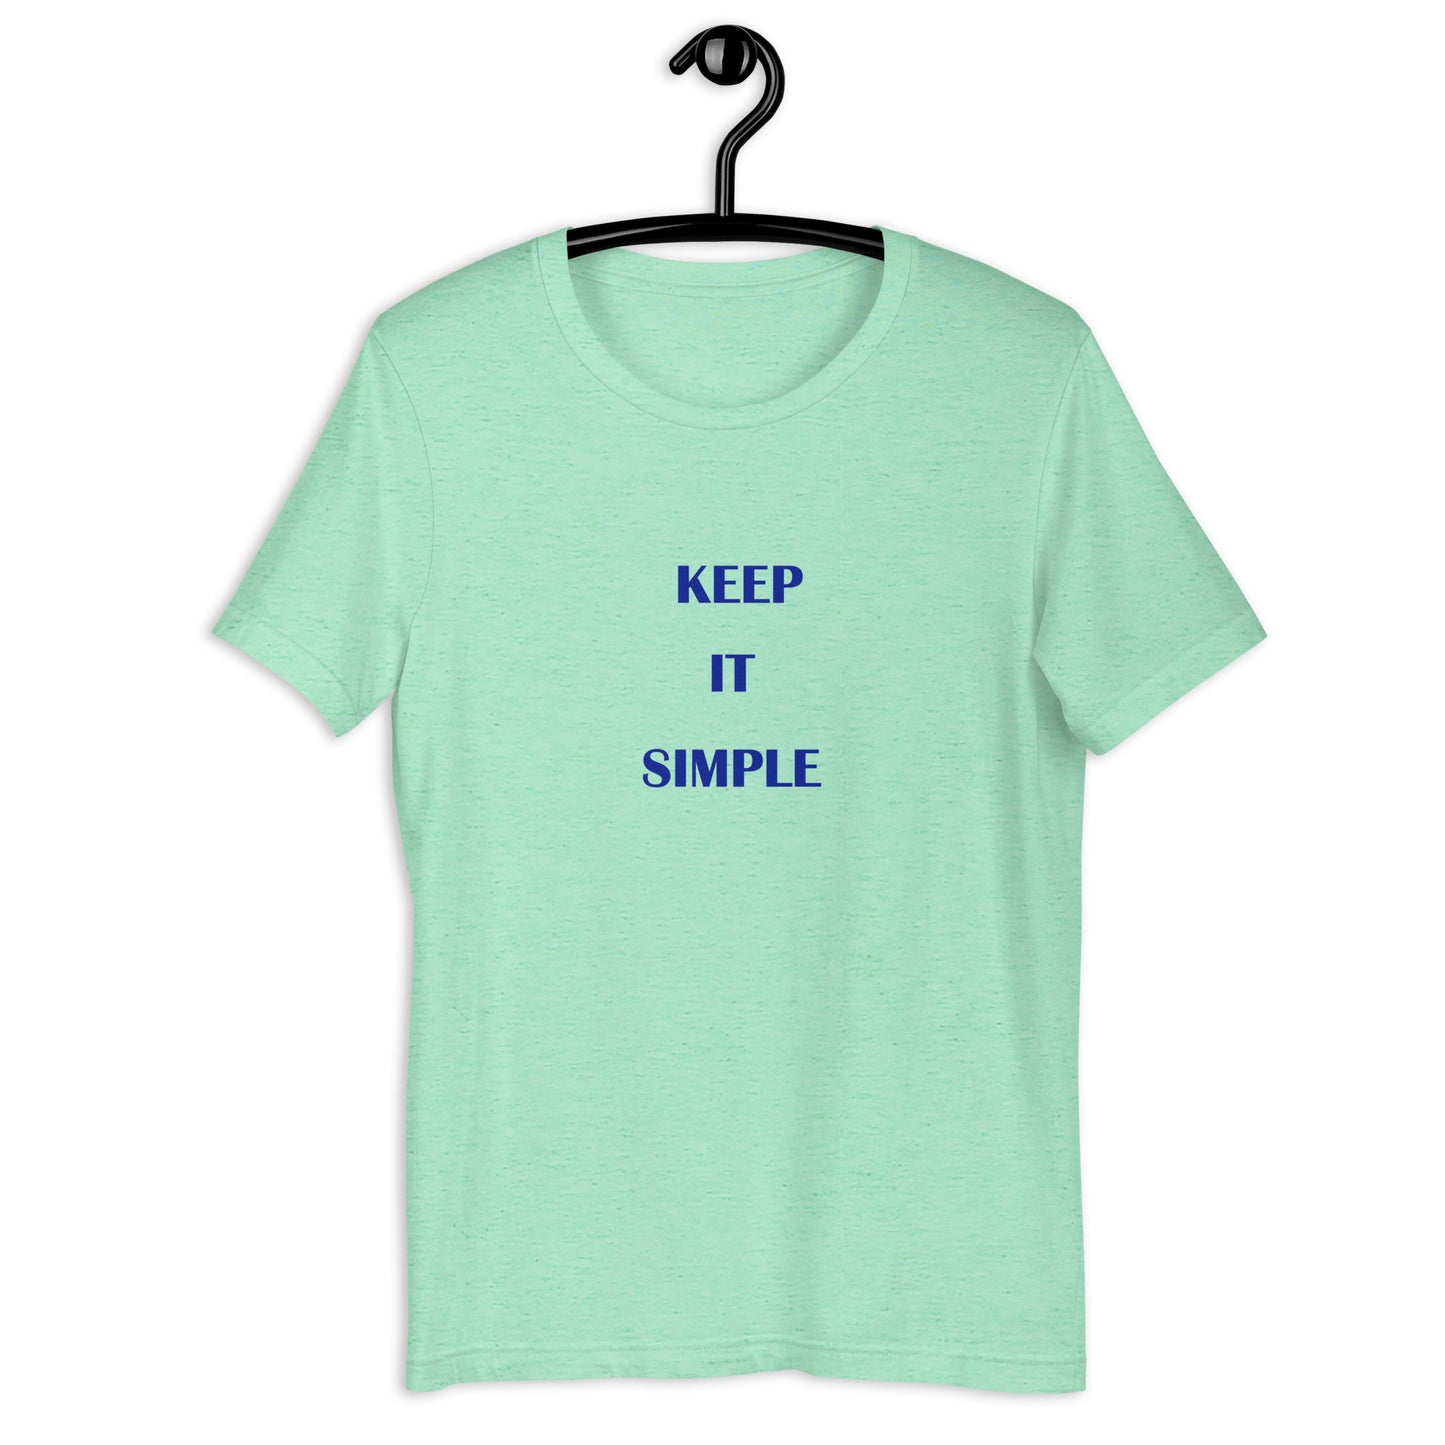 Keep It Simple, unisex t-shirt